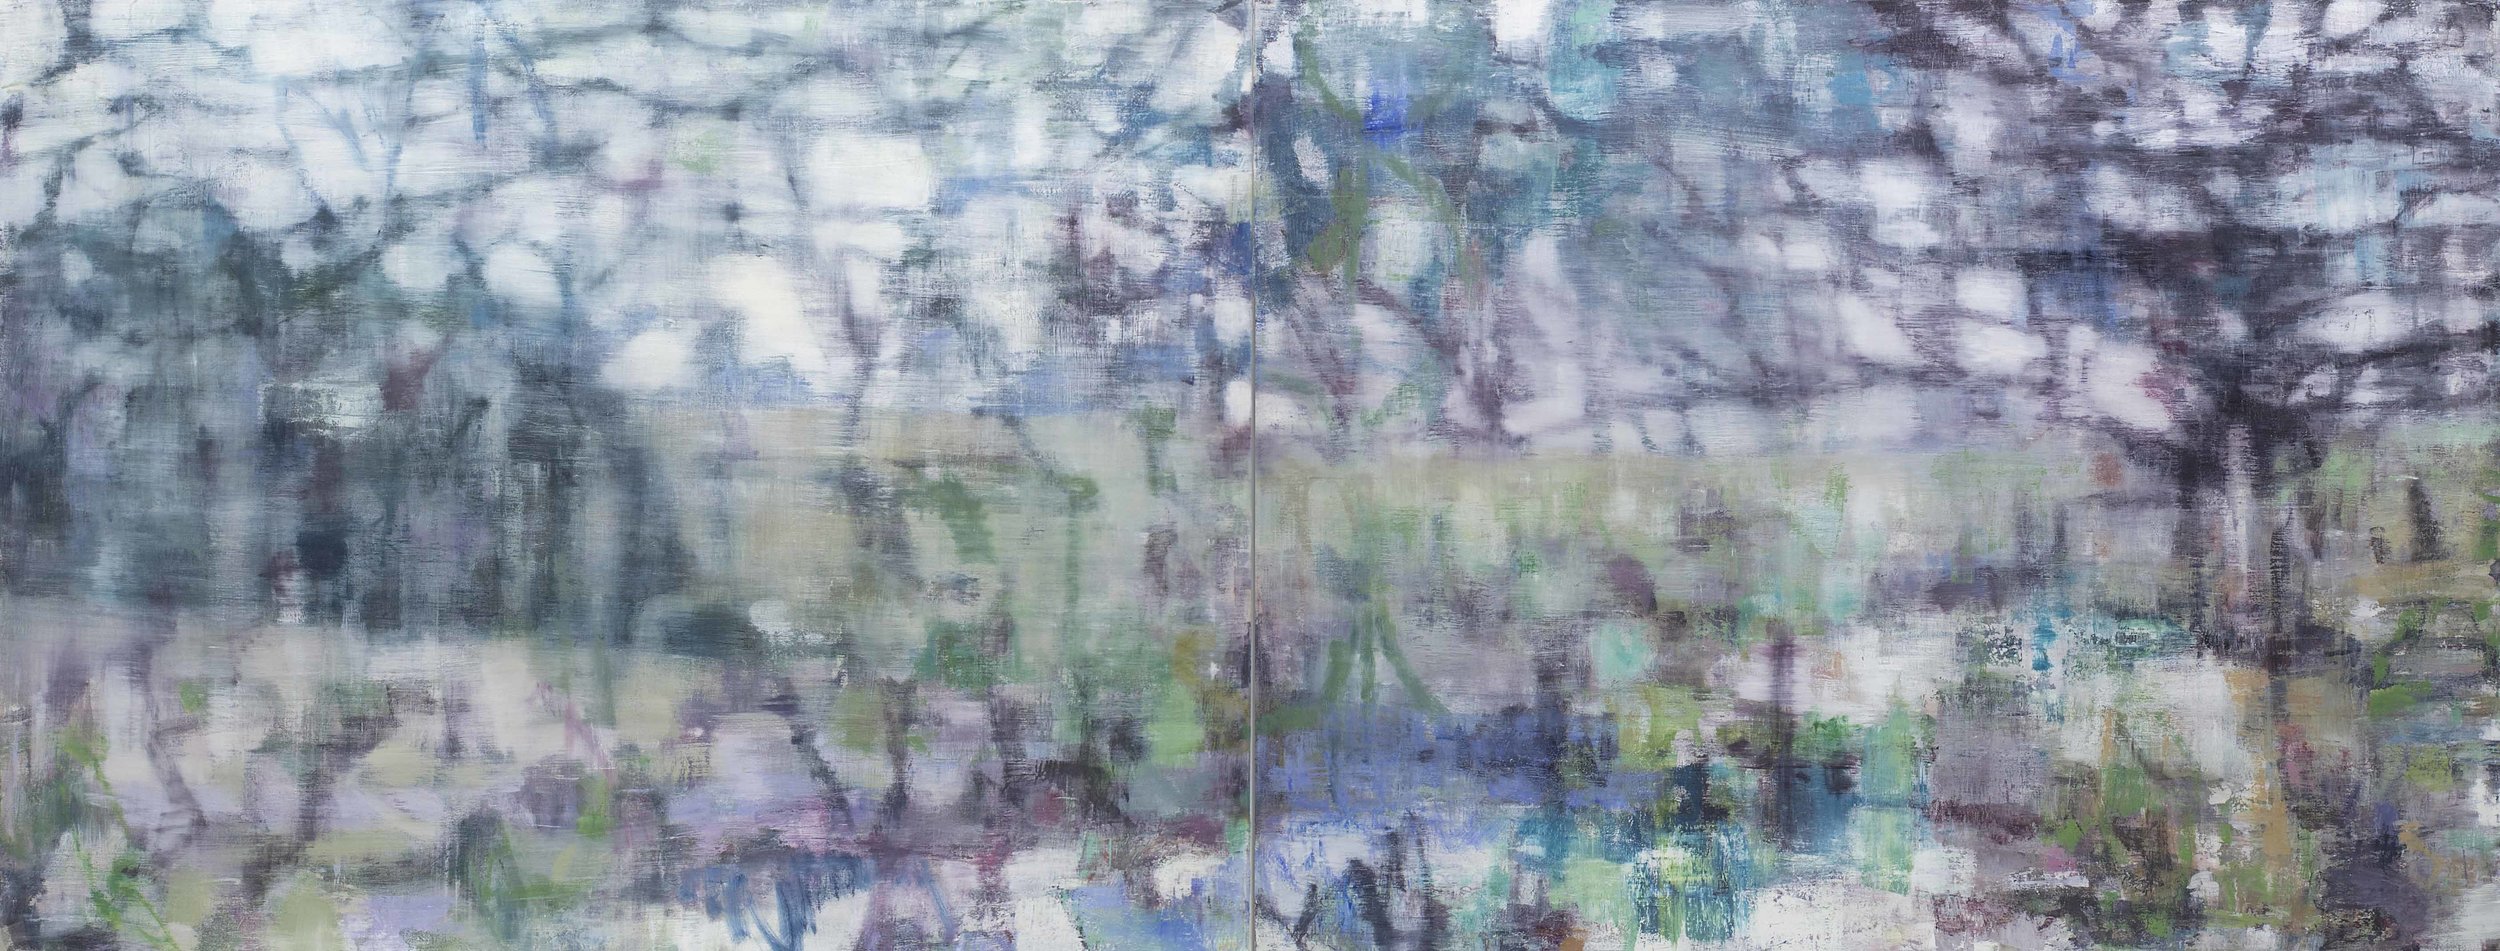  Joanna Logue,&nbsp; Heartland II , 2016, oil on linen, 130 x 340cm 